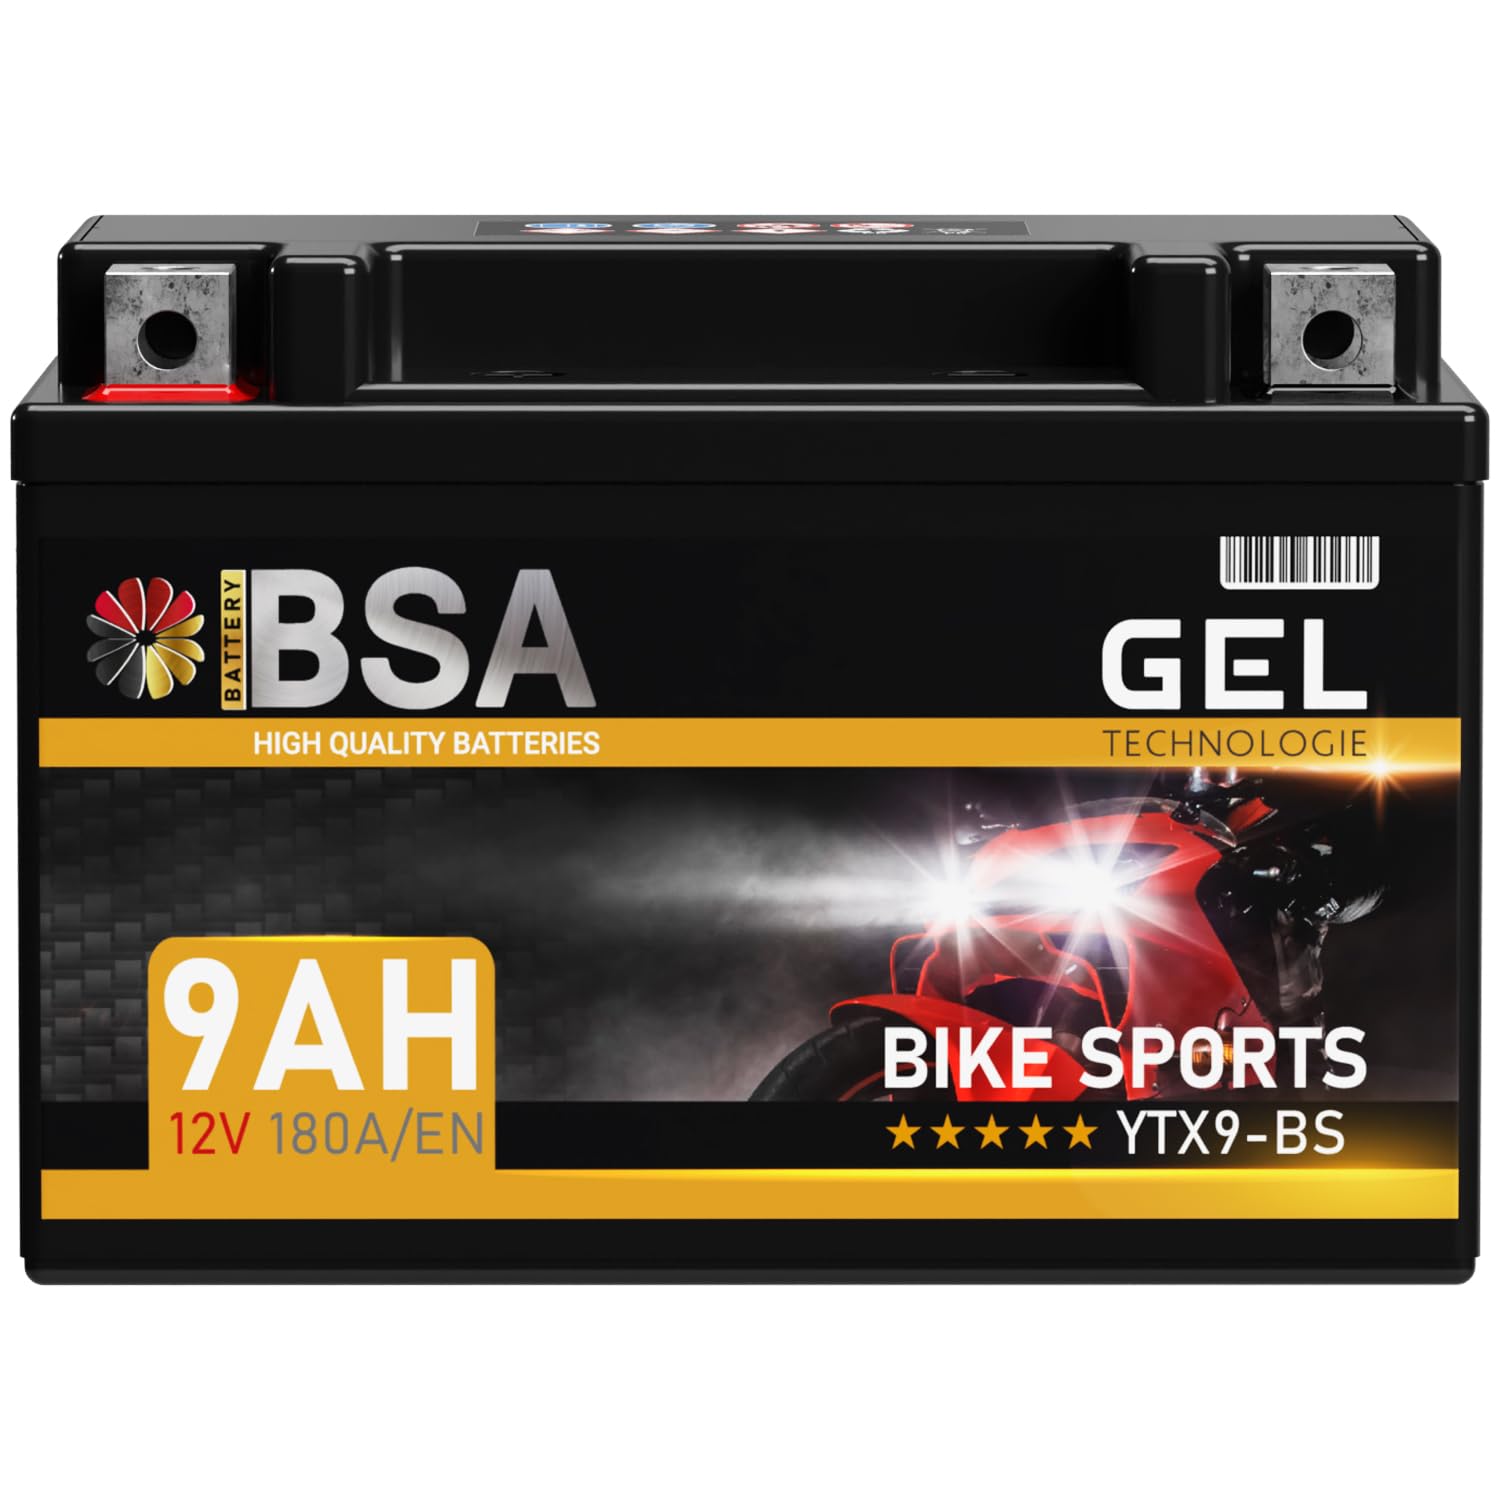 BSA YTX9-BS GEL Roller Batterie 12V 9Ah 180A/EN Motorradbatterie doppelte Lebensdauer entspricht 50812 CTX9-BS ETX9-BS GTX9-BS vorgeladen auslaufsicher wartungsfrei ersetzt 8Ah von BSA BATTERY HIGH QUALITY BATTERIES